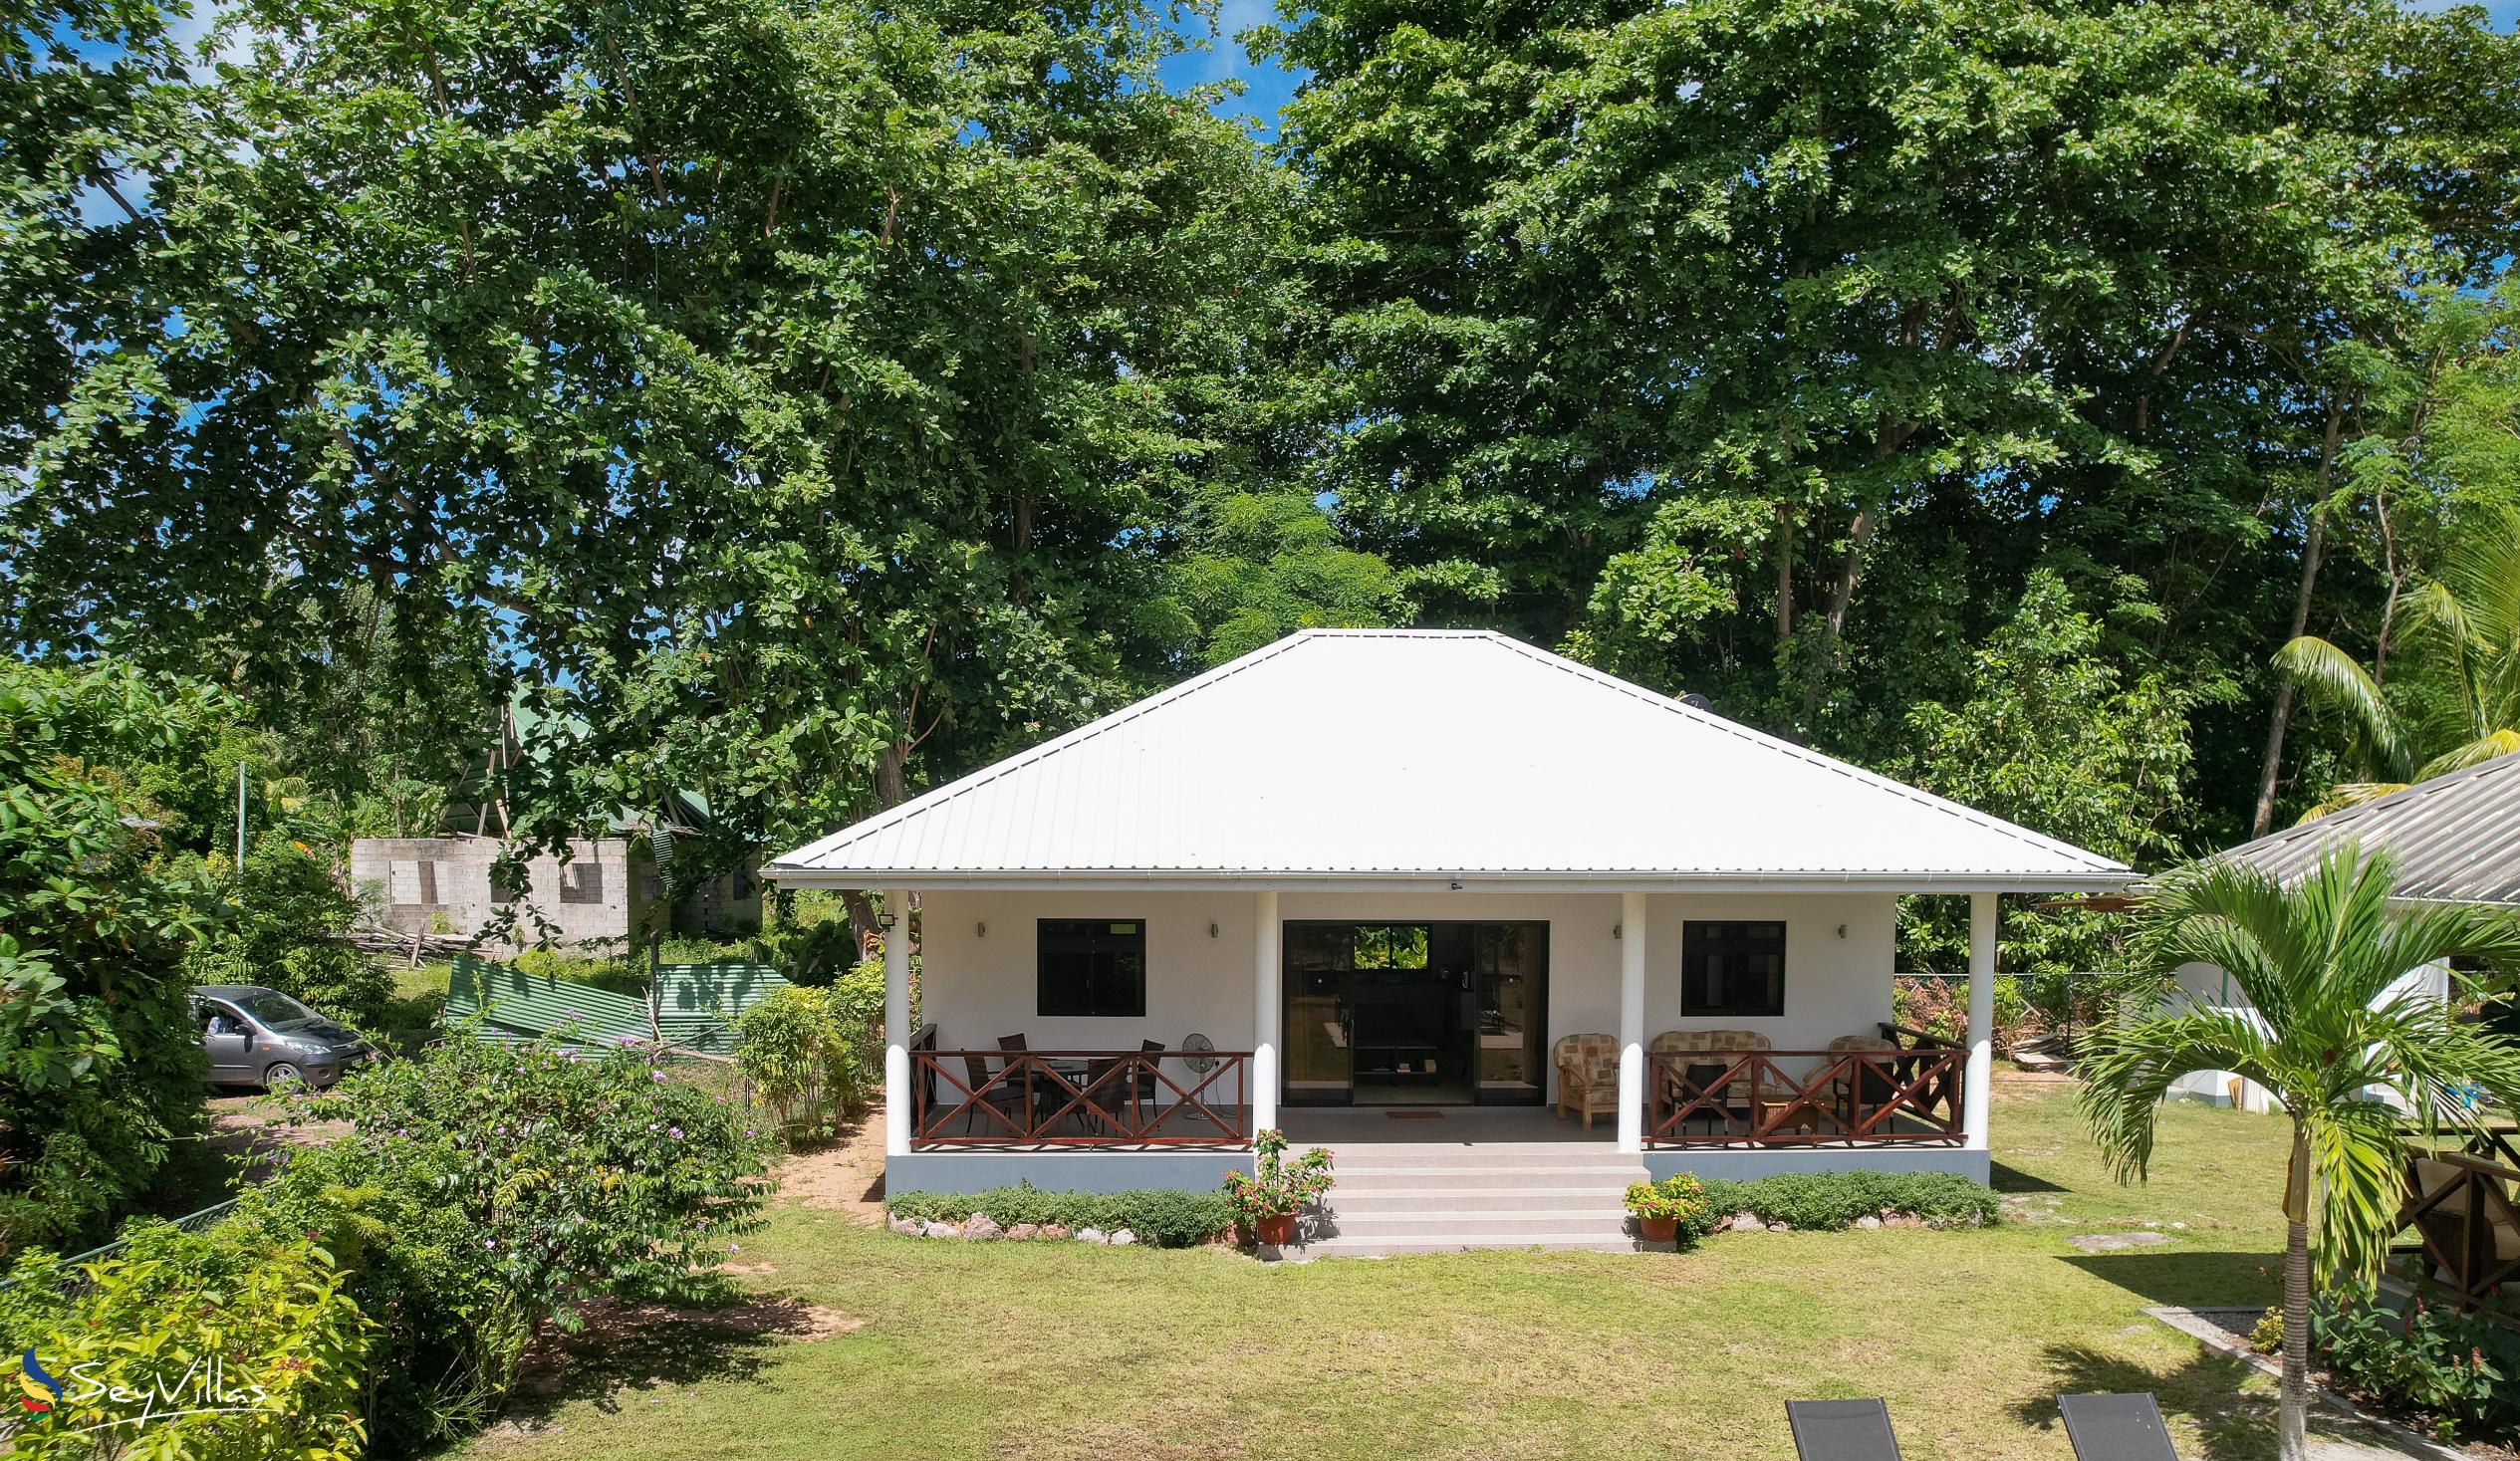 Foto 70: Villa Laure - Aussenbereich - Praslin (Seychellen)